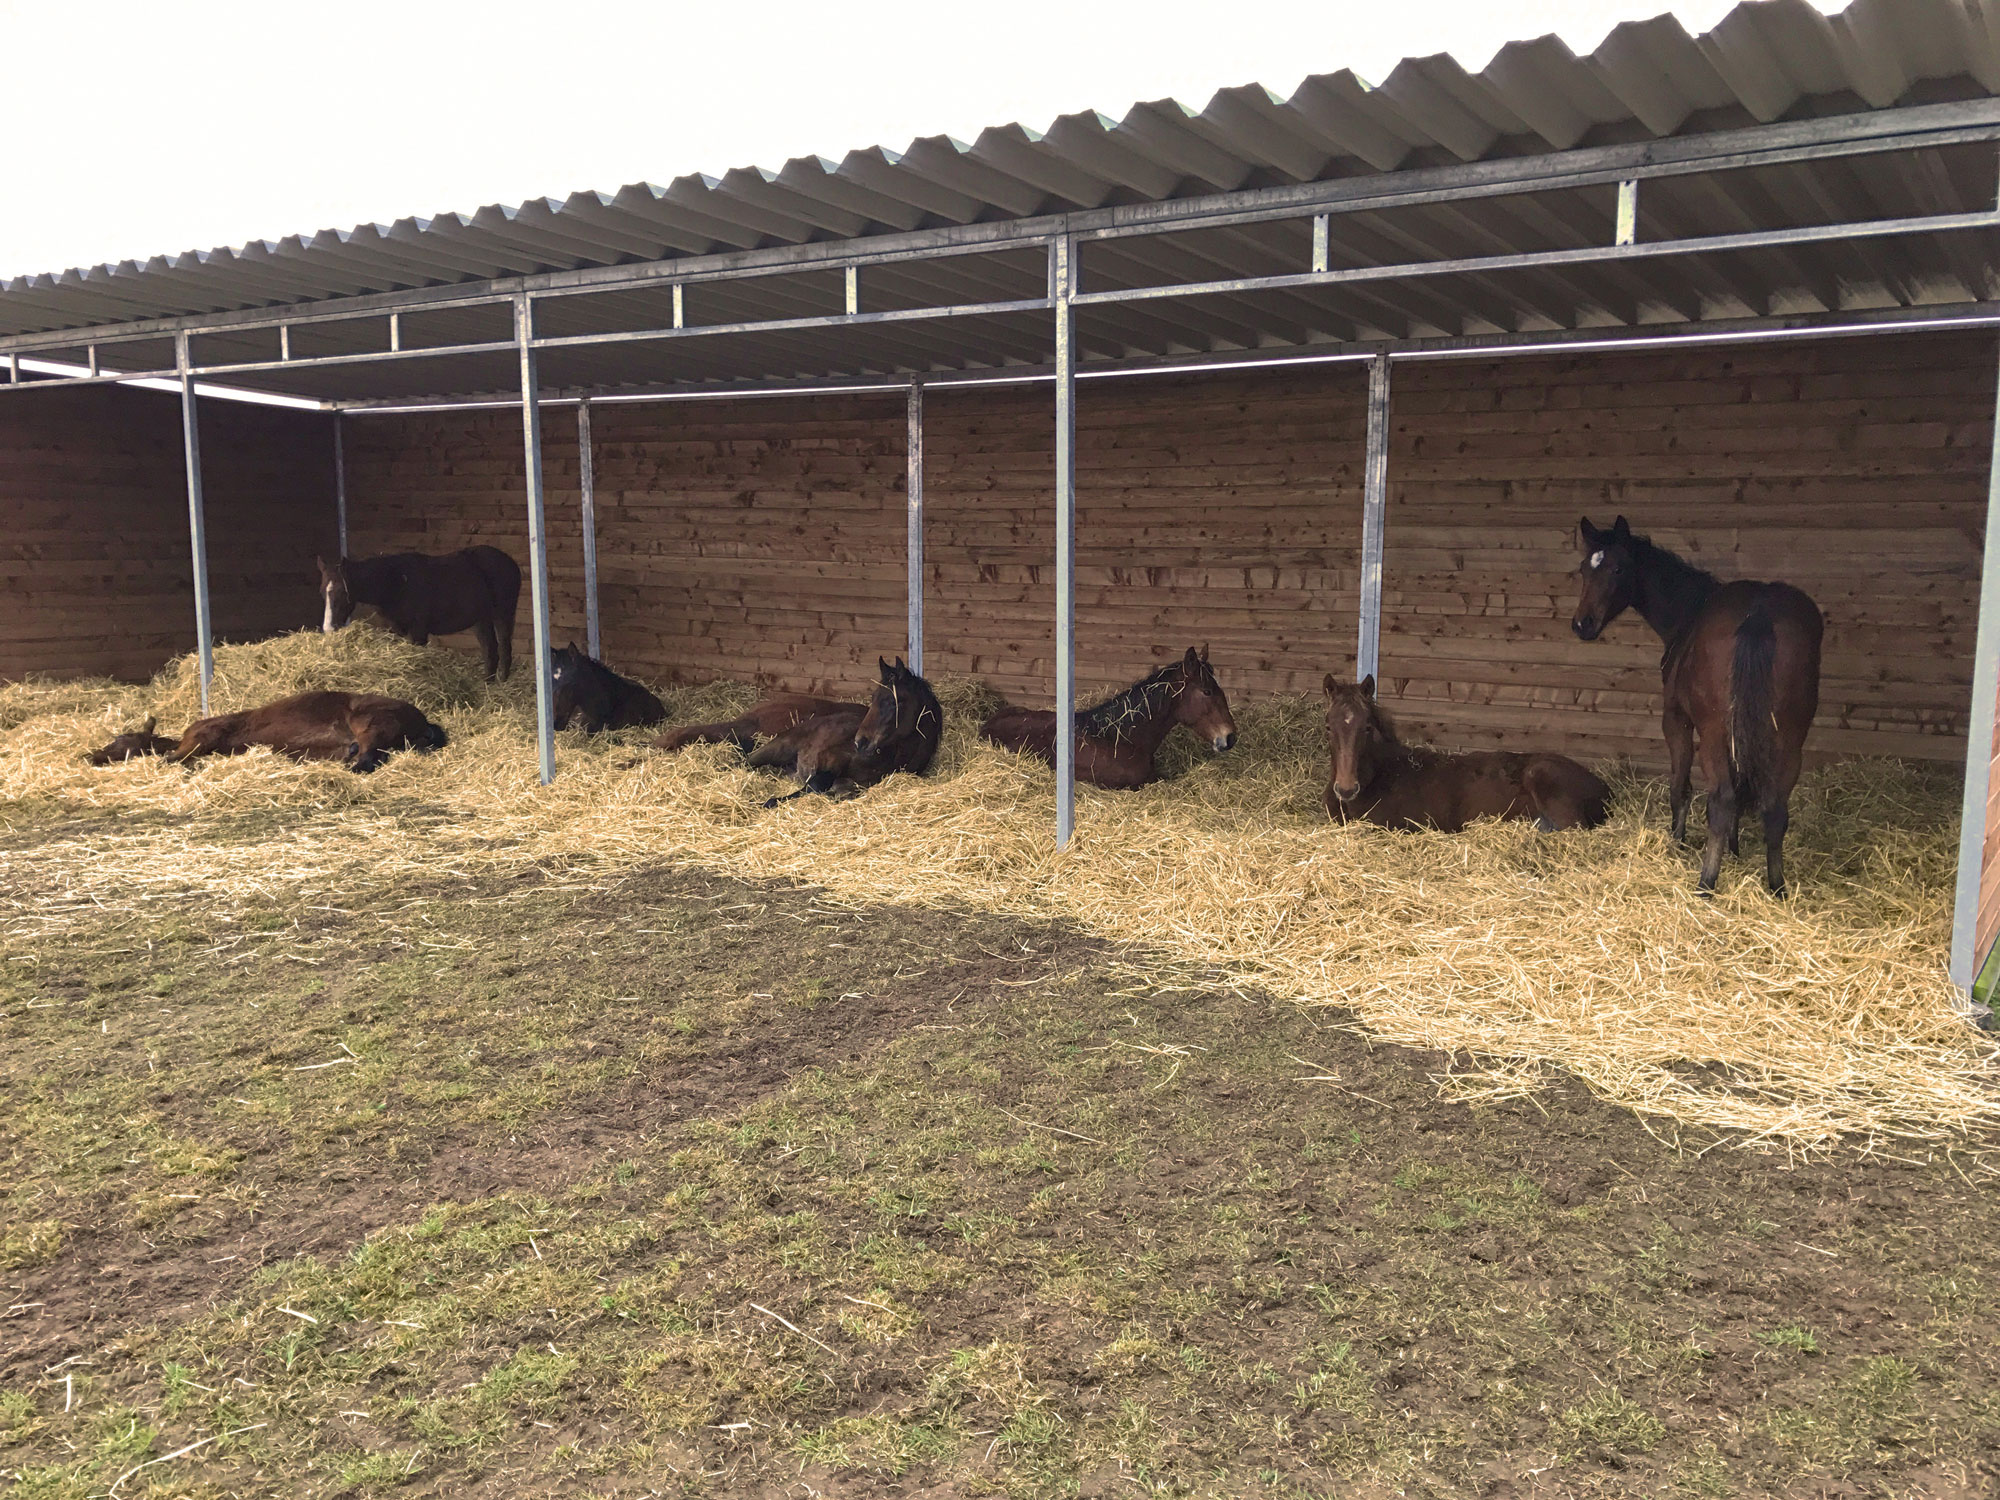 Sieben braune Pferde stehen oder liegen auf einem Strohbett in ihrem großen Weidehütt.